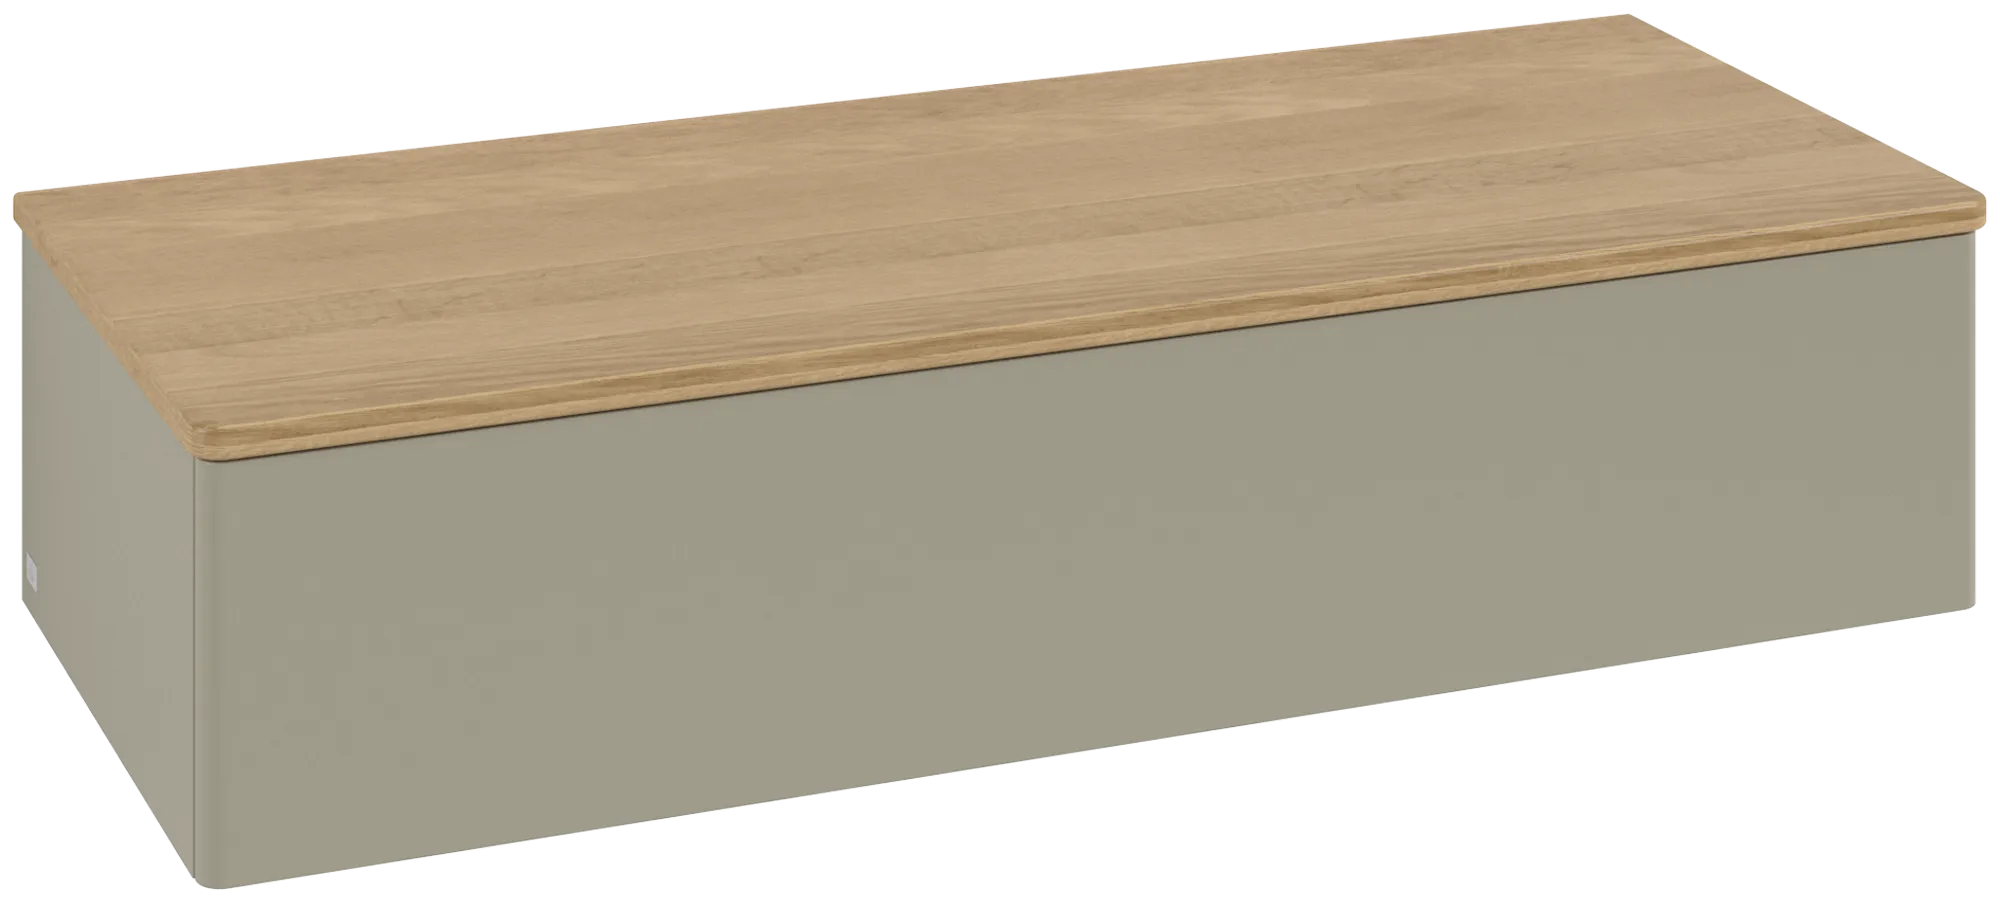 Bild von VILLEROY BOCH Antao Sideboard, 1 Auszug, 1200 x 268 x 500 mm, Front ohne Struktur, Stone Grey Matt Lacquer / Honey Oak #K41001HK